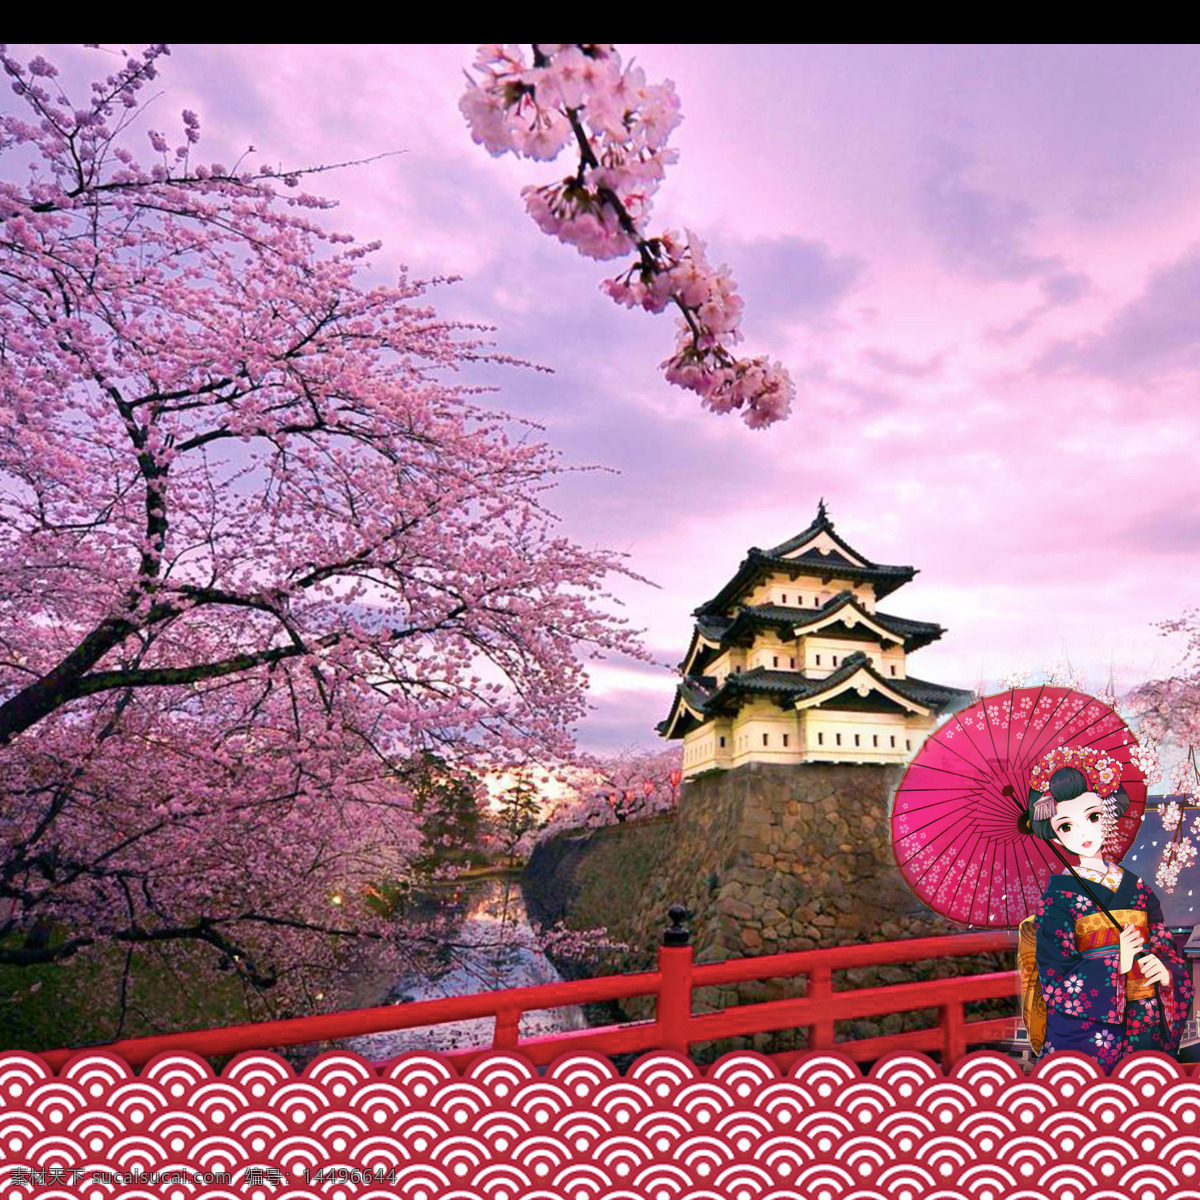 紫 粉色 浪漫 樱花 日本旅游 装饰 元素 日本风景名胜 日本旅游攻略 日本印象 塔